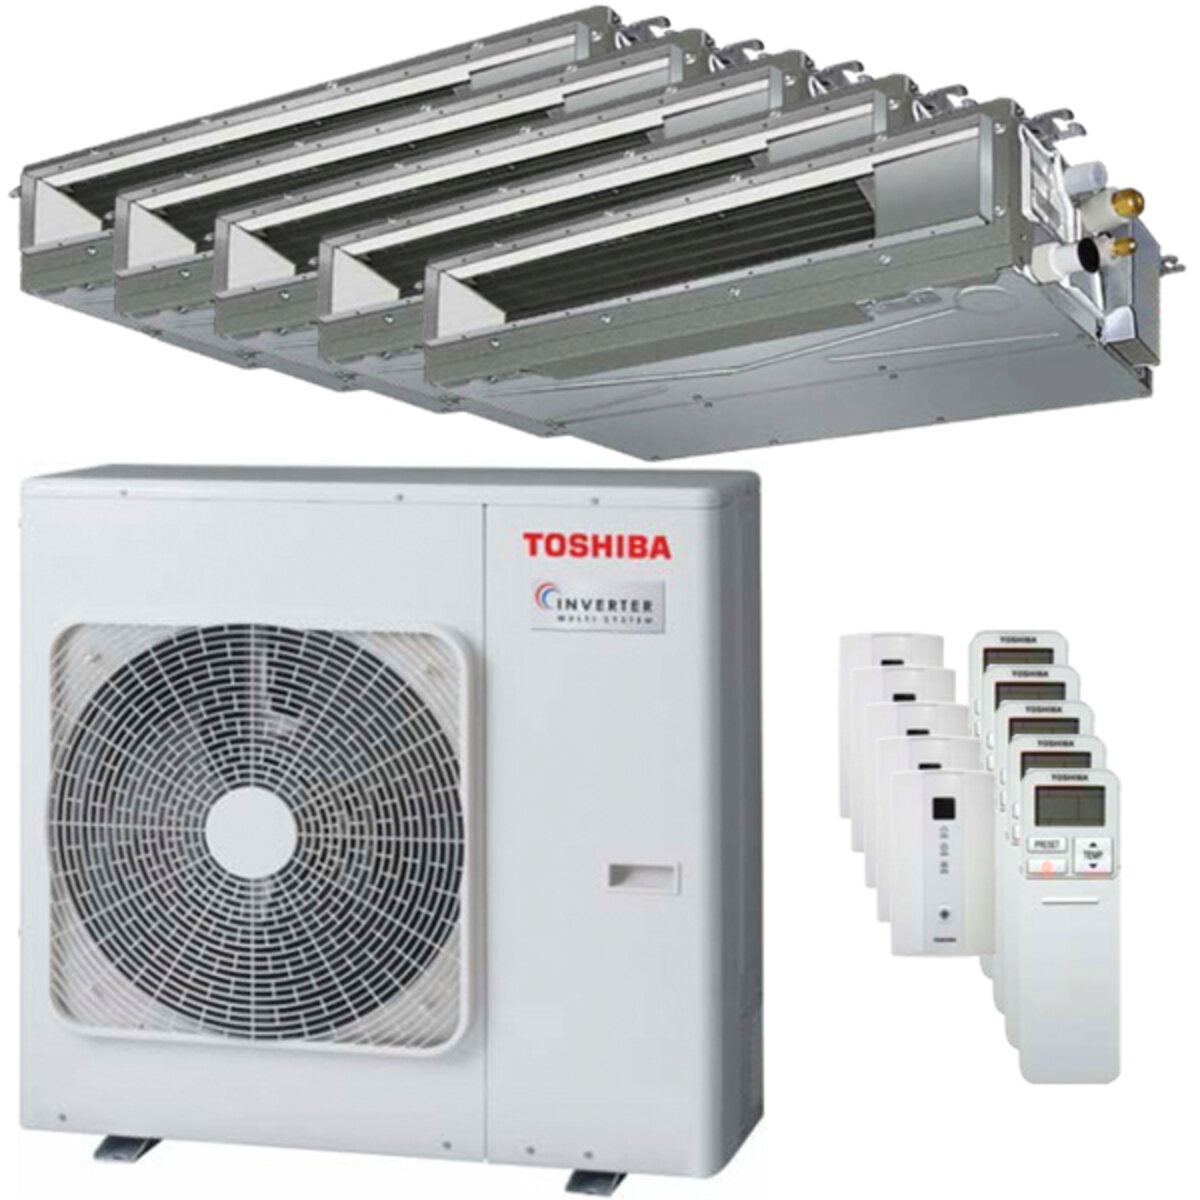 Toshiba Ductable Air Conditioner U2 penta split 9000 + 9000 + 12000 + 12000 + 12000 BTU inverter A++ unité extérieure 10,0 kW